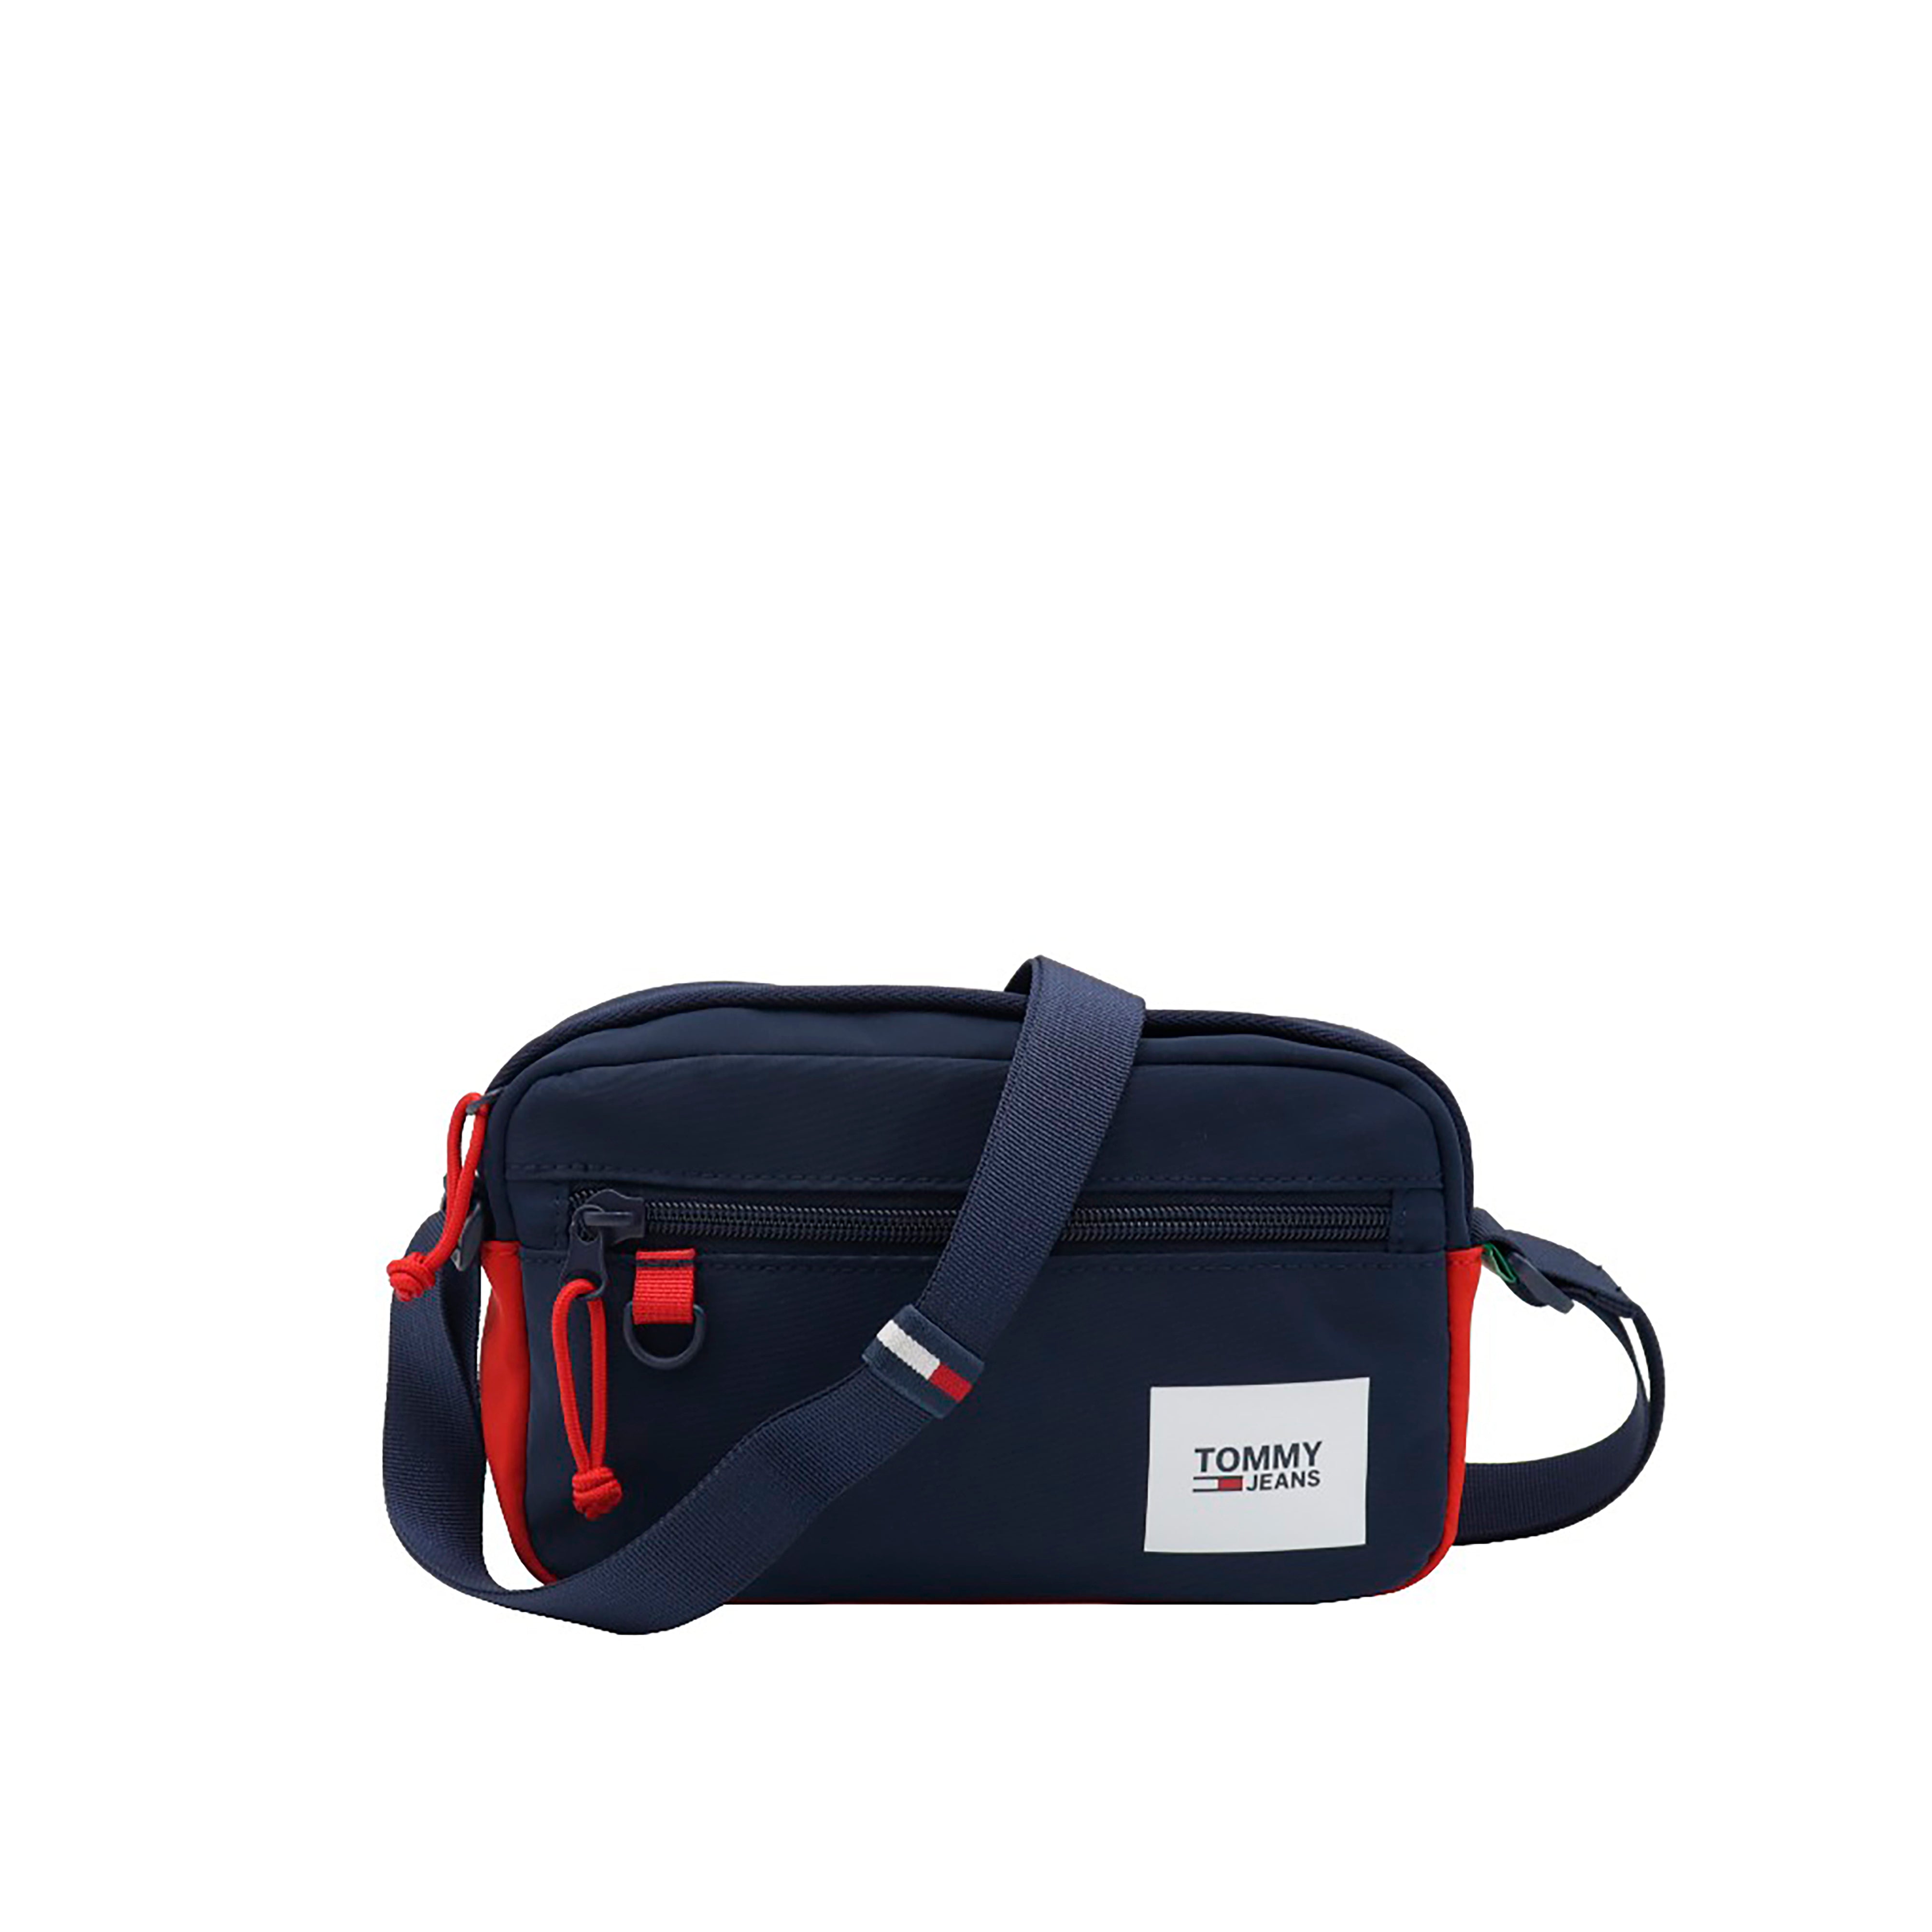 Tommy Hilfiger TJM Urban Essentials Men's Shoulder Bag Navy Blue